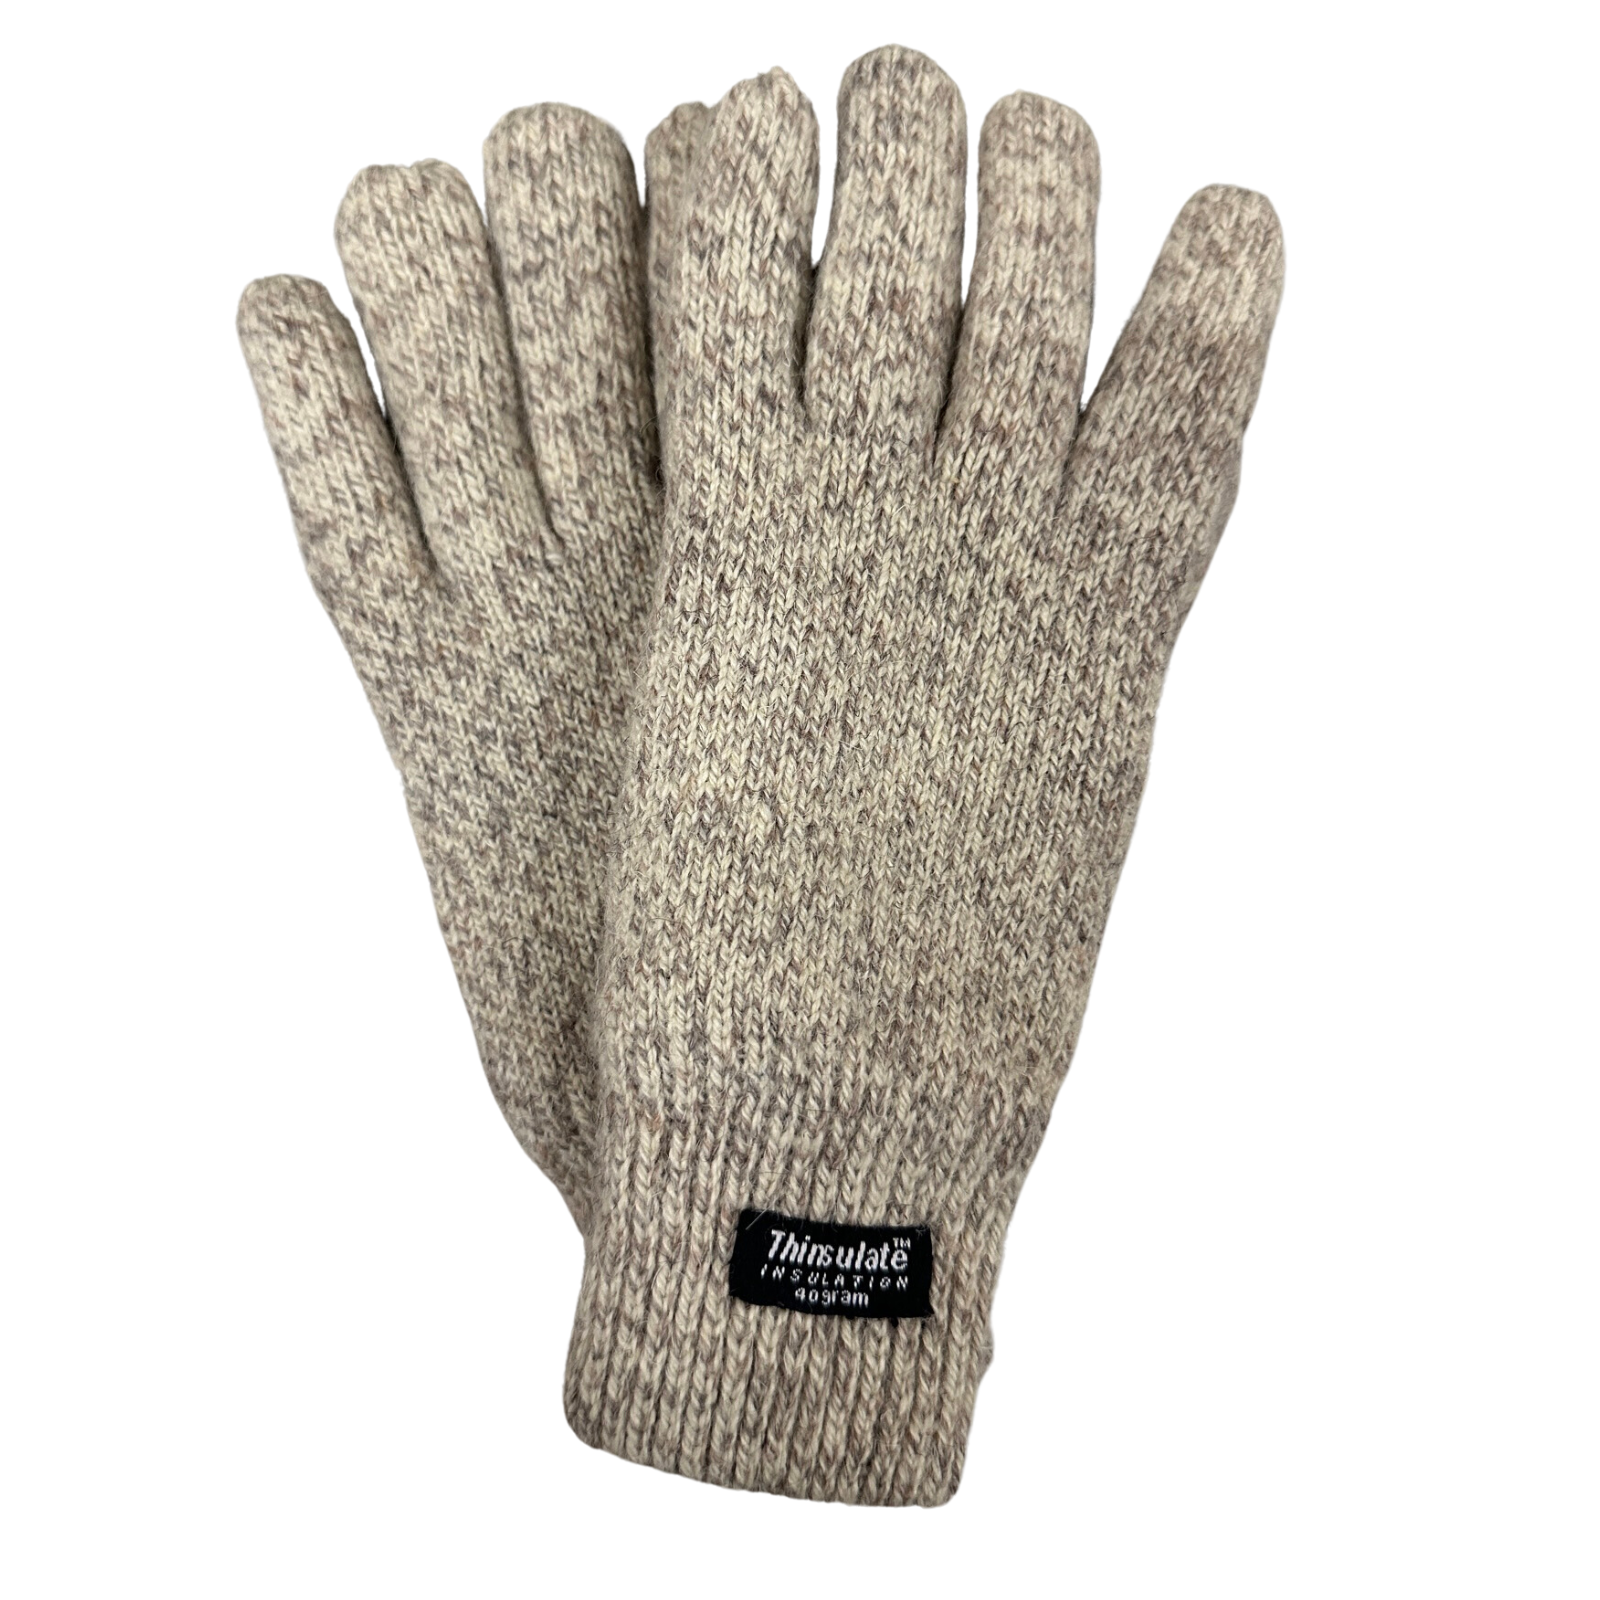 Orvis Rag Wool Lambswool Gloves